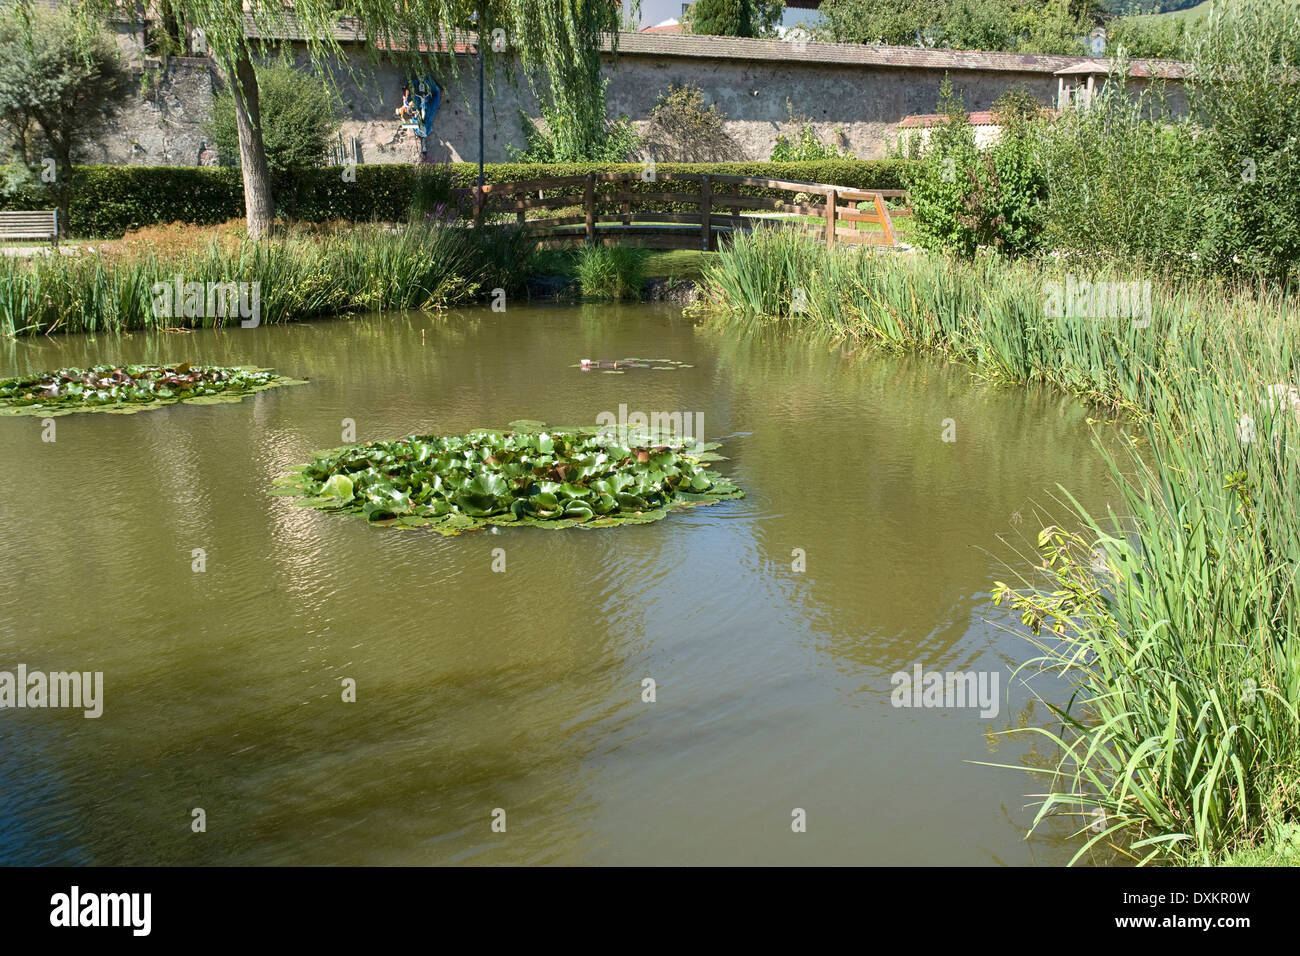 Détail d'une petite ville nommée 'Saint Pierre' dans la Forêt-Noire (Allemagne du Sud) montrant un étang lumineux ensoleillé Banque D'Images